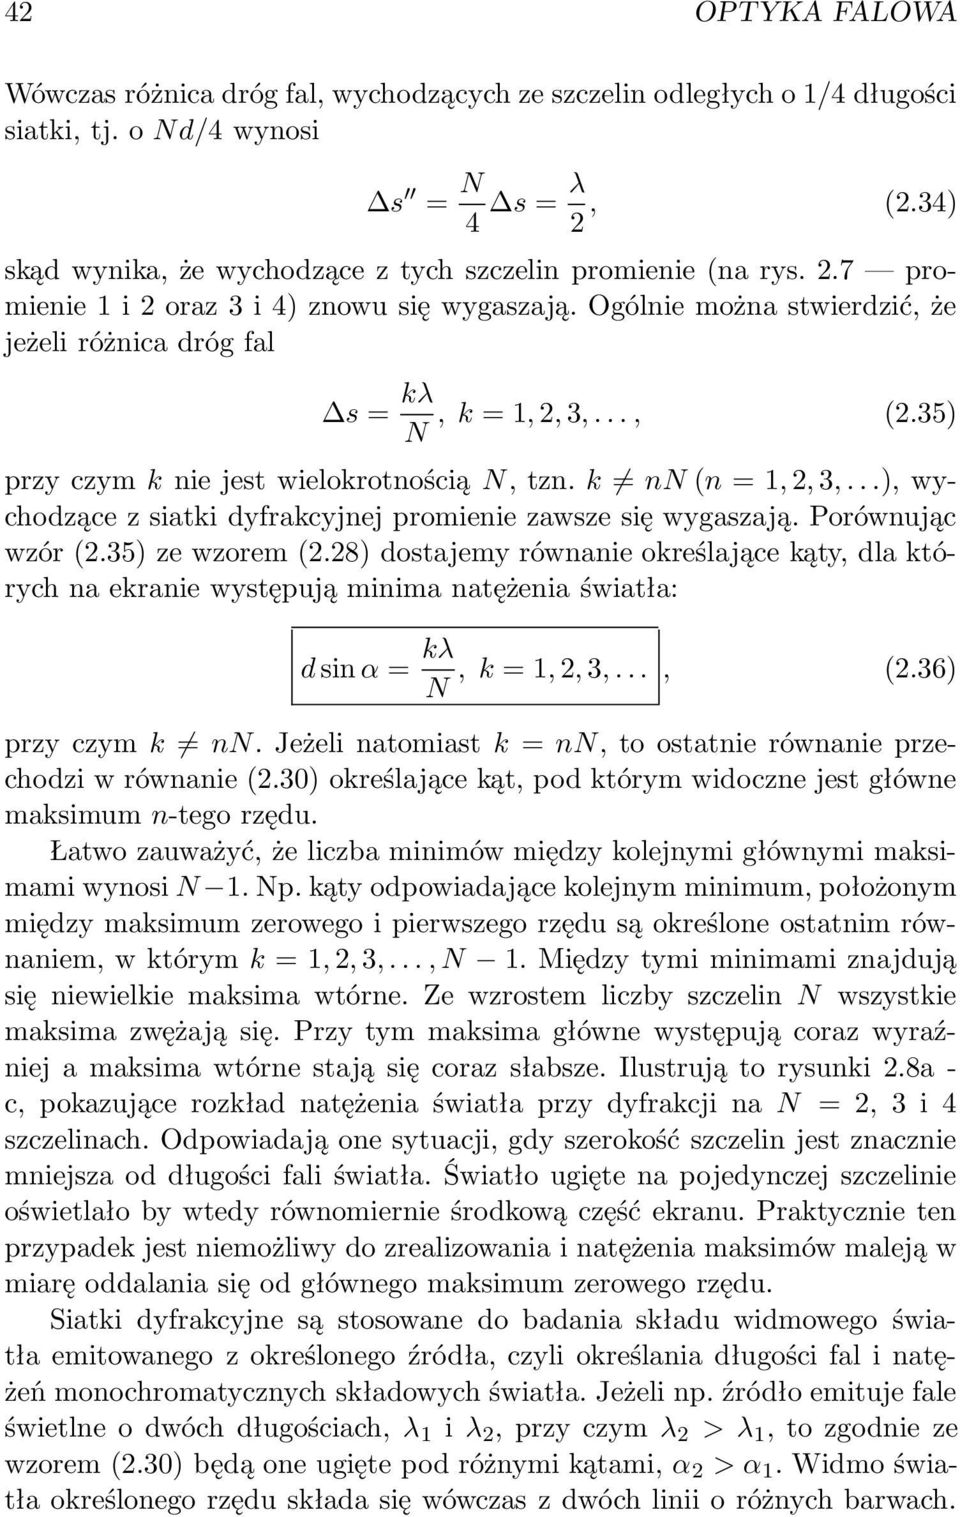 35) N przy czym k nie jest wielokrotnością N, tzn. k nn (n = 1, 2, 3,...), wychodzące z siatki dyfrakcyjnej promienie zawsze się wygaszają. Porównując wzór (2.35) ze wzorem (2.